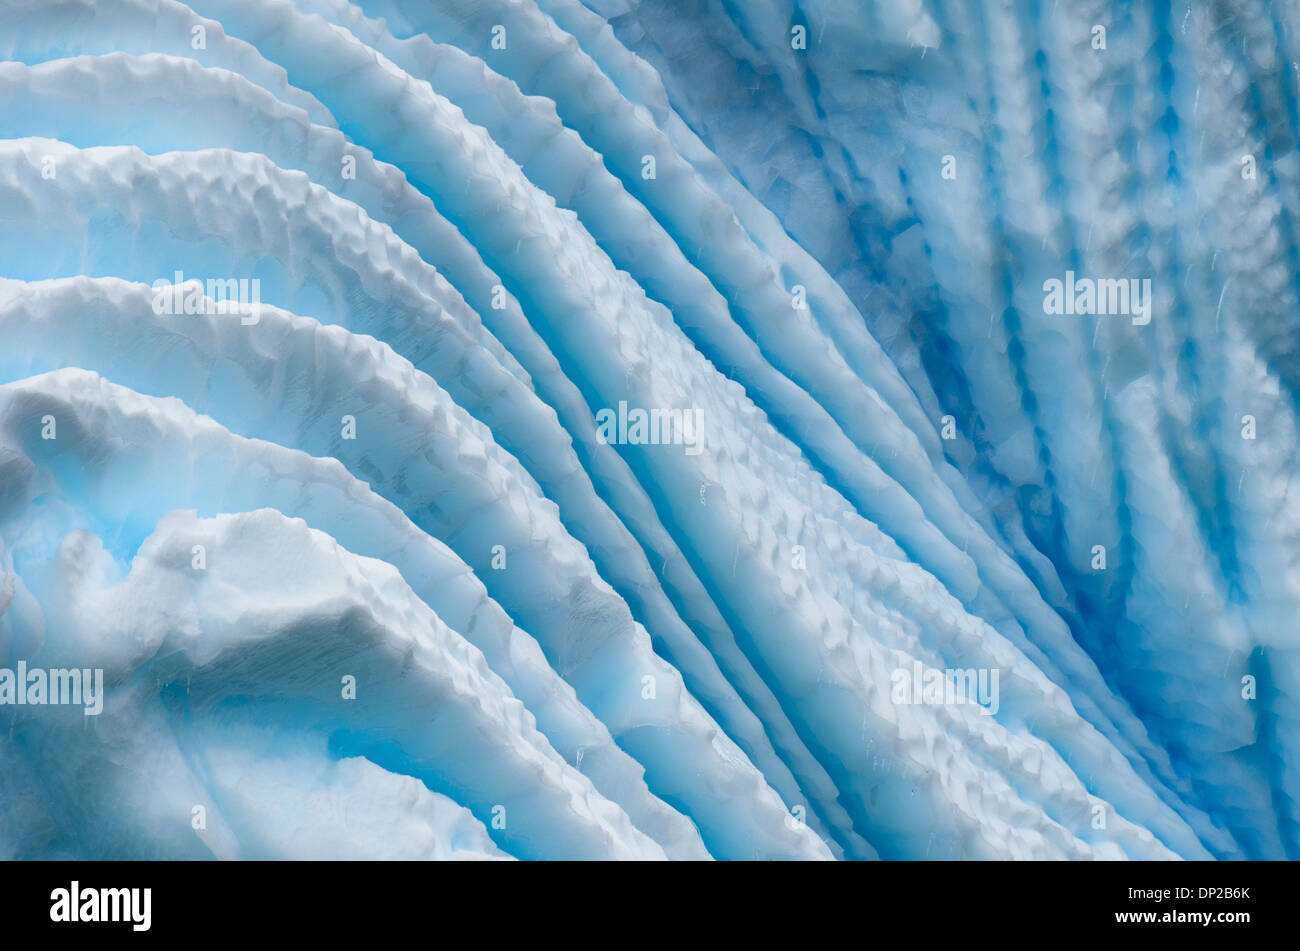 Antartide - profonde scanalature nel lato di un blu iceberg appena al di fuori della penisola antartica. Le scanalature sono creati da aria compressa la fuoriuscita di bolle come un iceberg si scioglie lentamente. Foto Stock